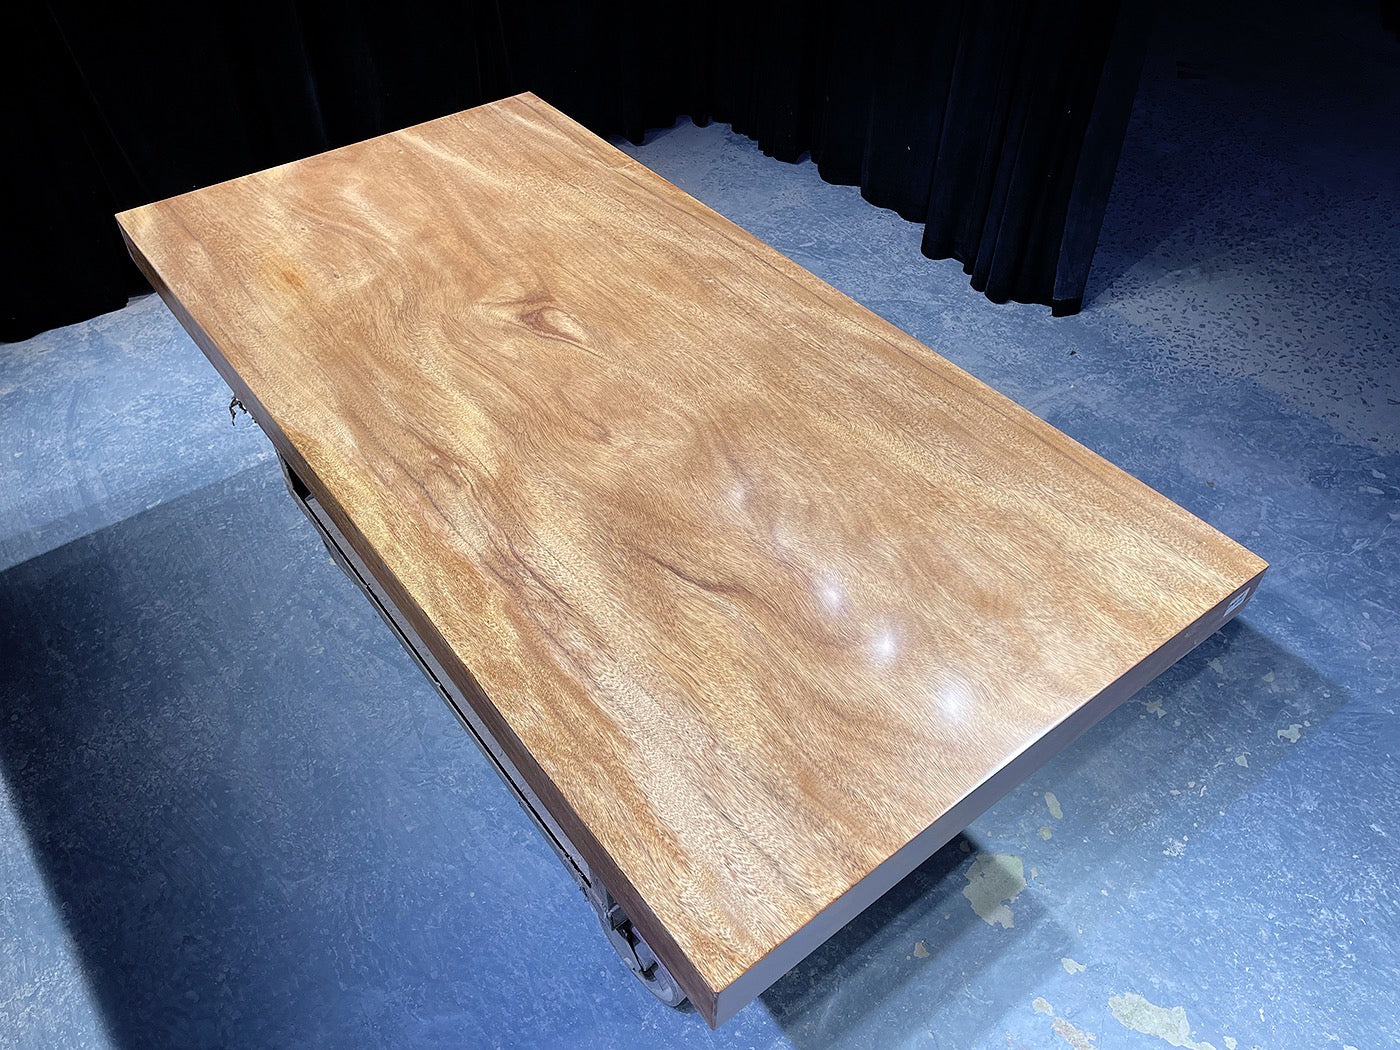 طاولة بلاطة ذات حافة حية، سطح طاولة من راتنجات الإيبوكسي من الخشب الطبيعي ذو حافة حية